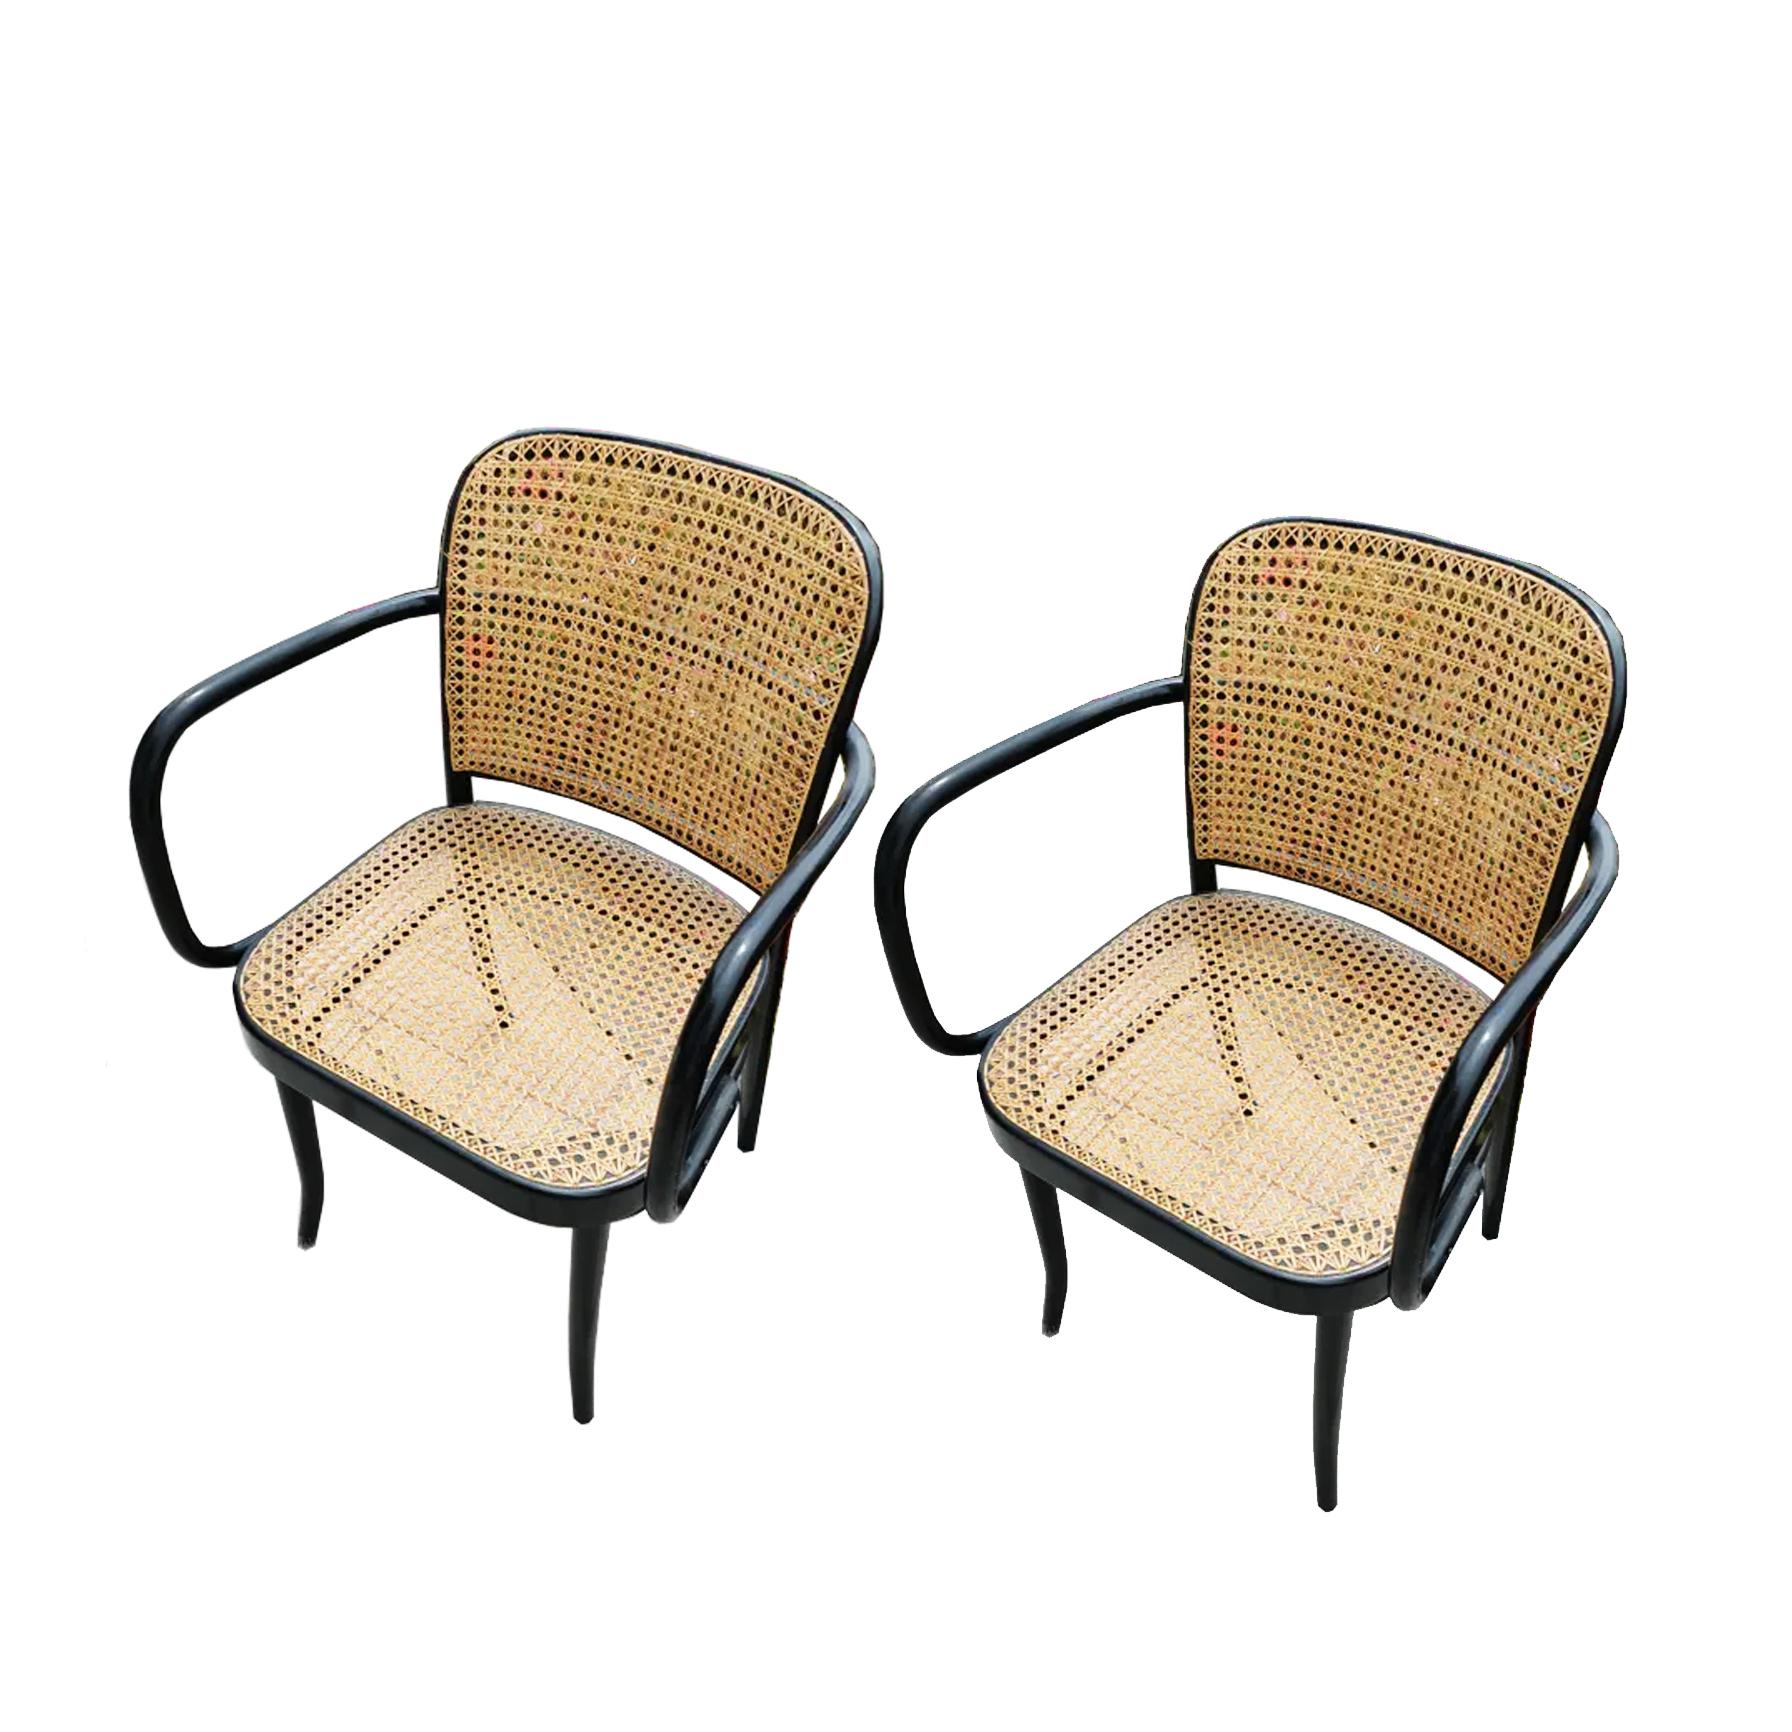 Thonet  Josef Hoffmann Bentwood Chairs, No. 811 Set of Two, Czech Republic 2